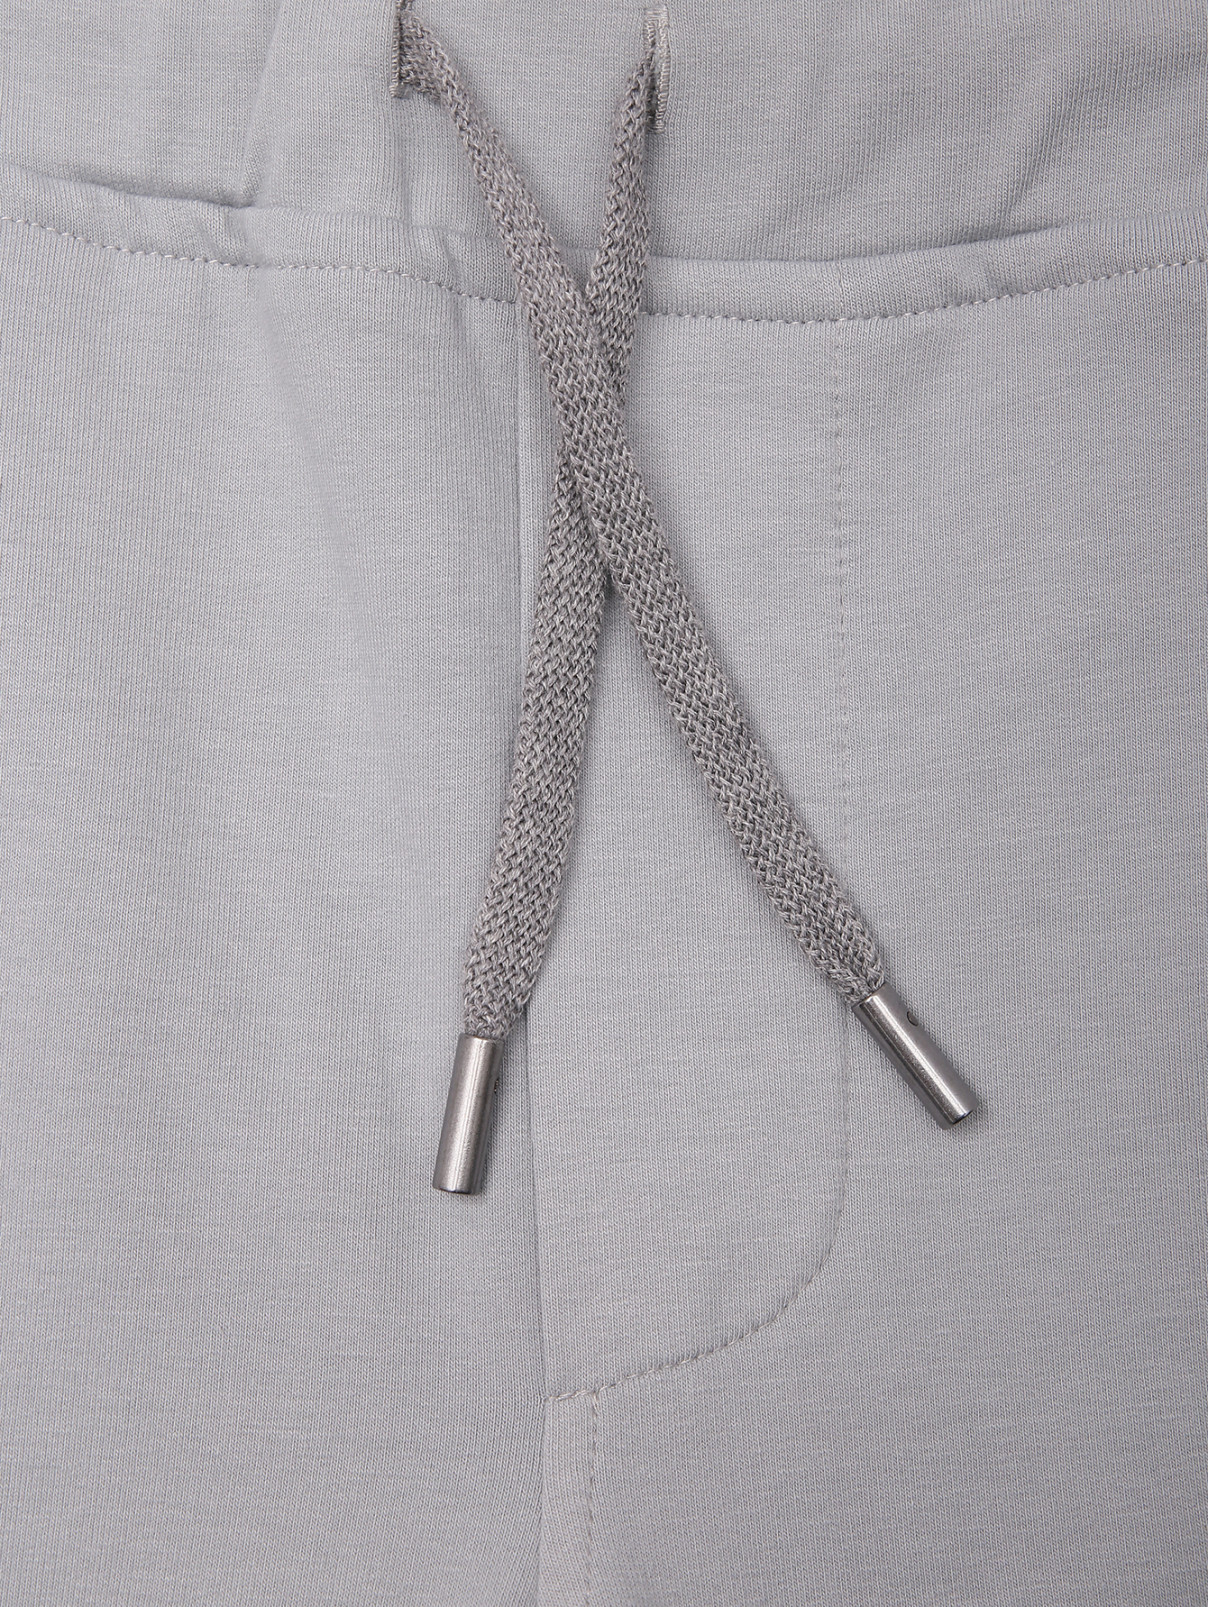 Трикотажные брюки из хлопка с карманами Capobianco  –  Деталь  – Цвет:  Серый